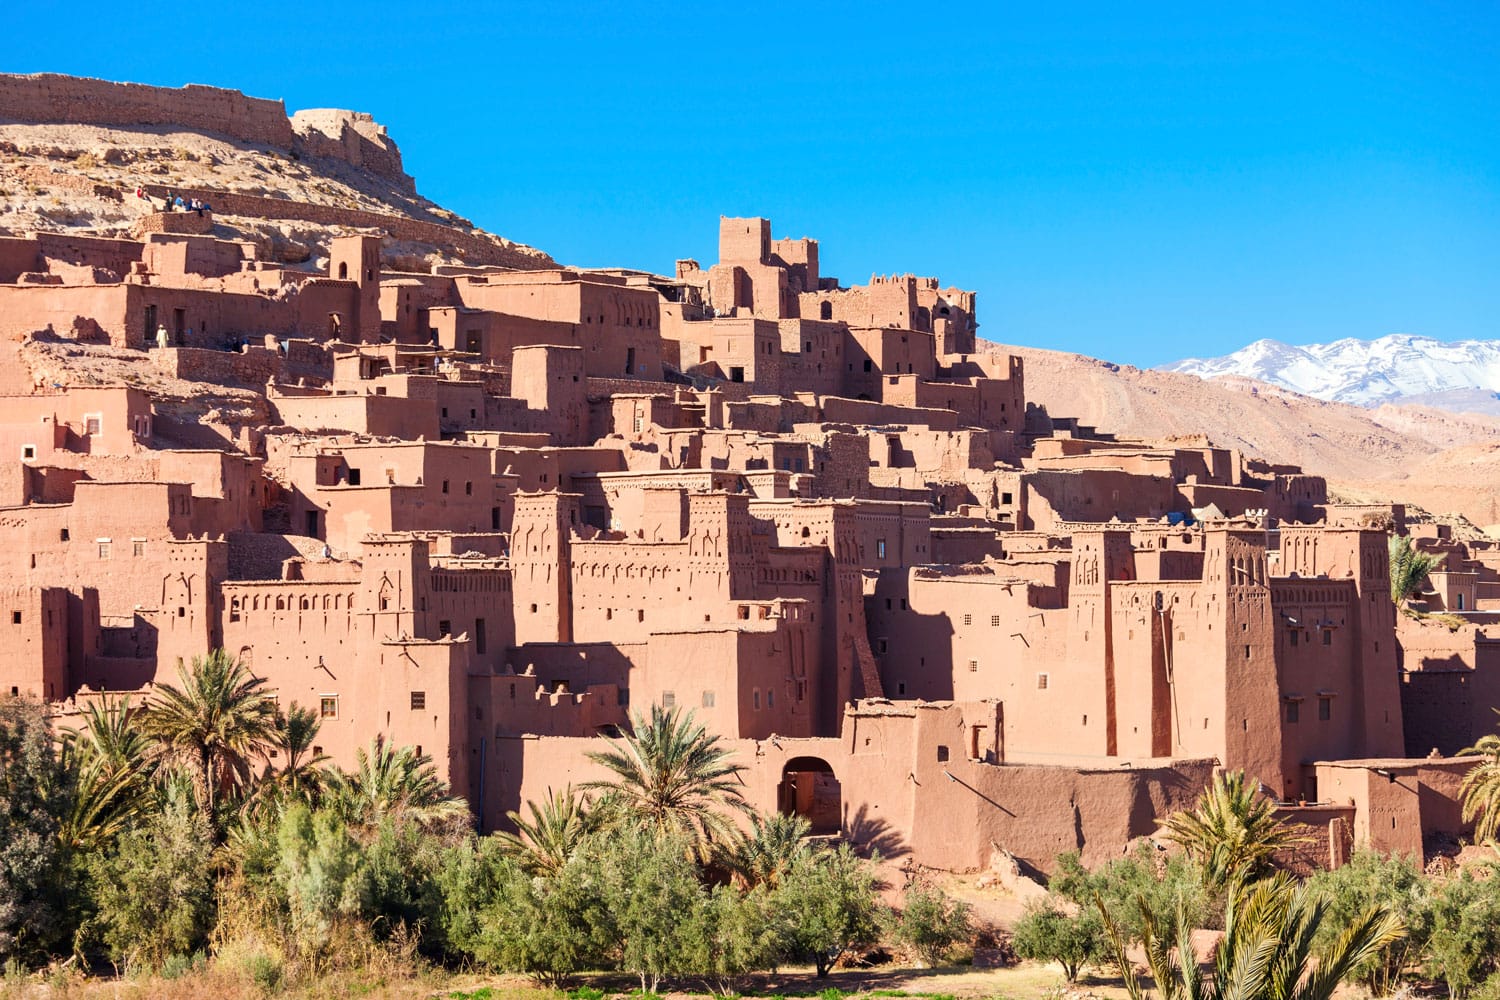 Ait Ben Haddou (atau Ait Benhaddou) adalah kota berbenteng di sepanjang bekas rute kafilah antara Sahara dan Marrakech di Maroko